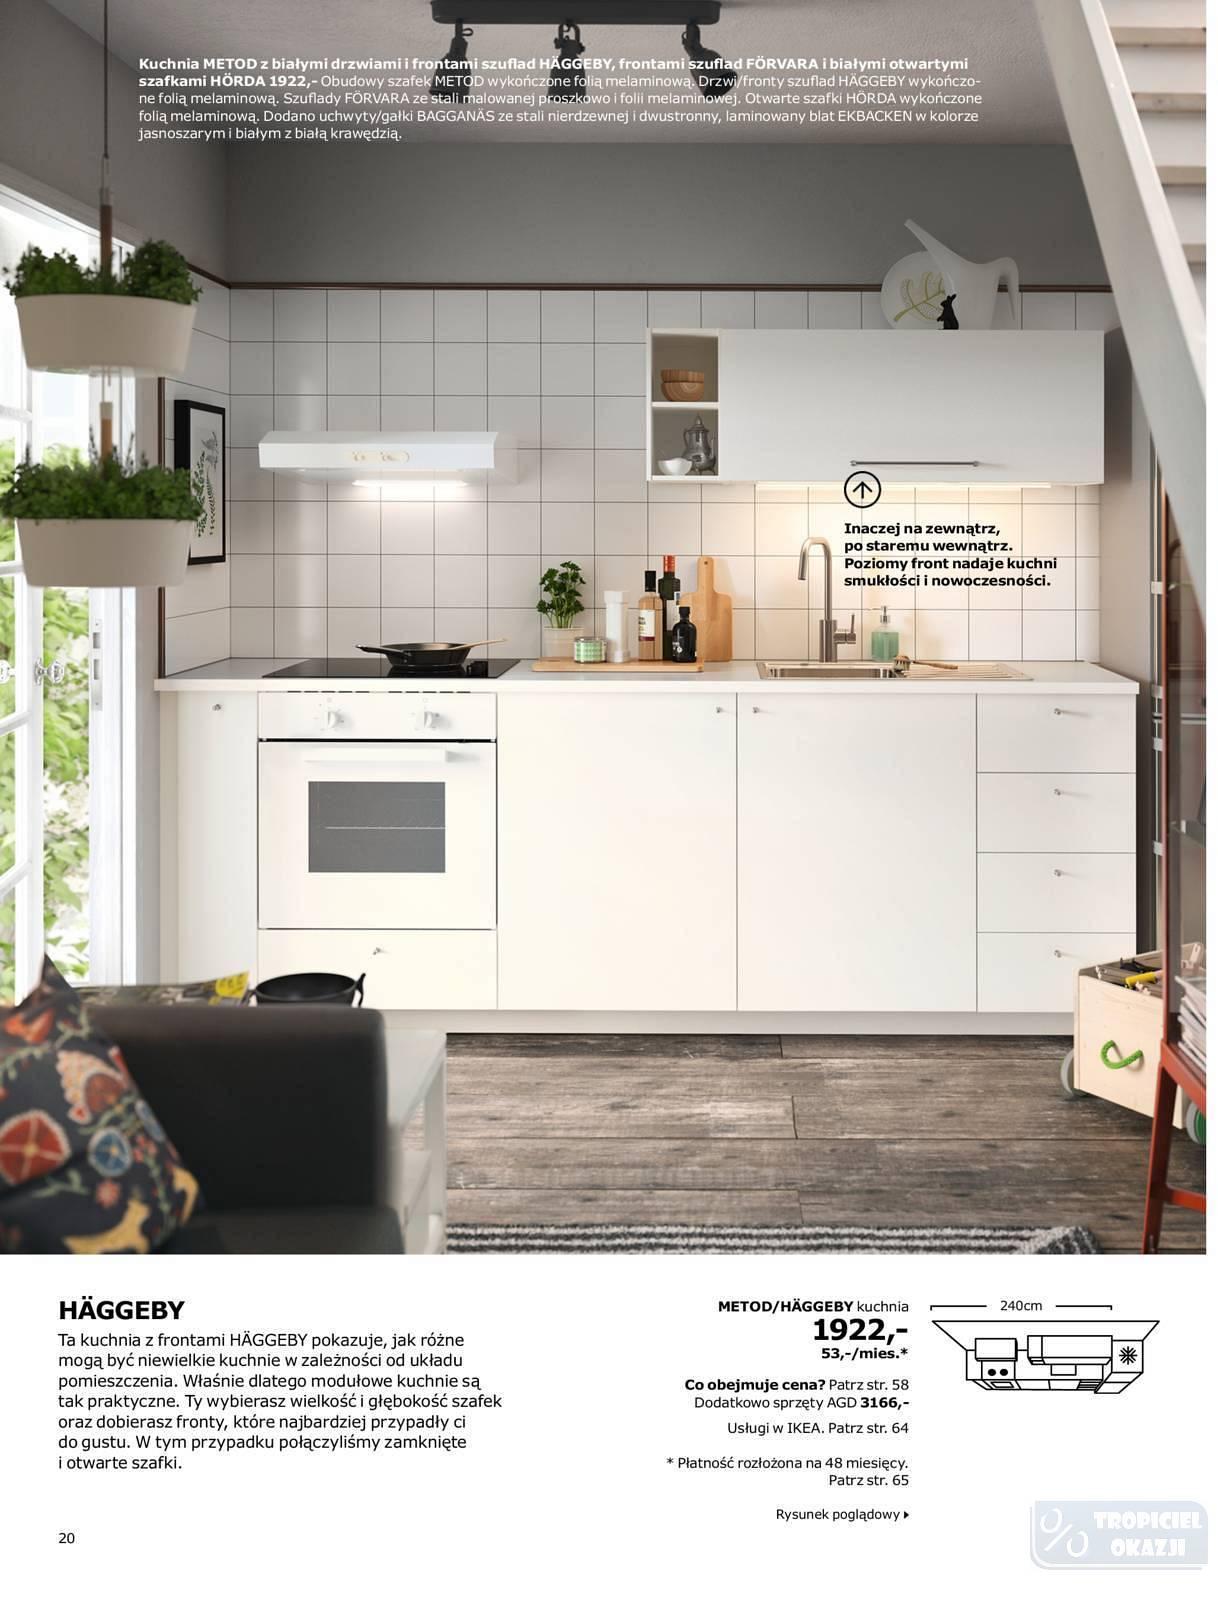 Gazetka Promocyjna I Reklamowa Ikea Katalog Kuchnie 2018 Od 12 09 2017 Do 31 01 2018 S 20